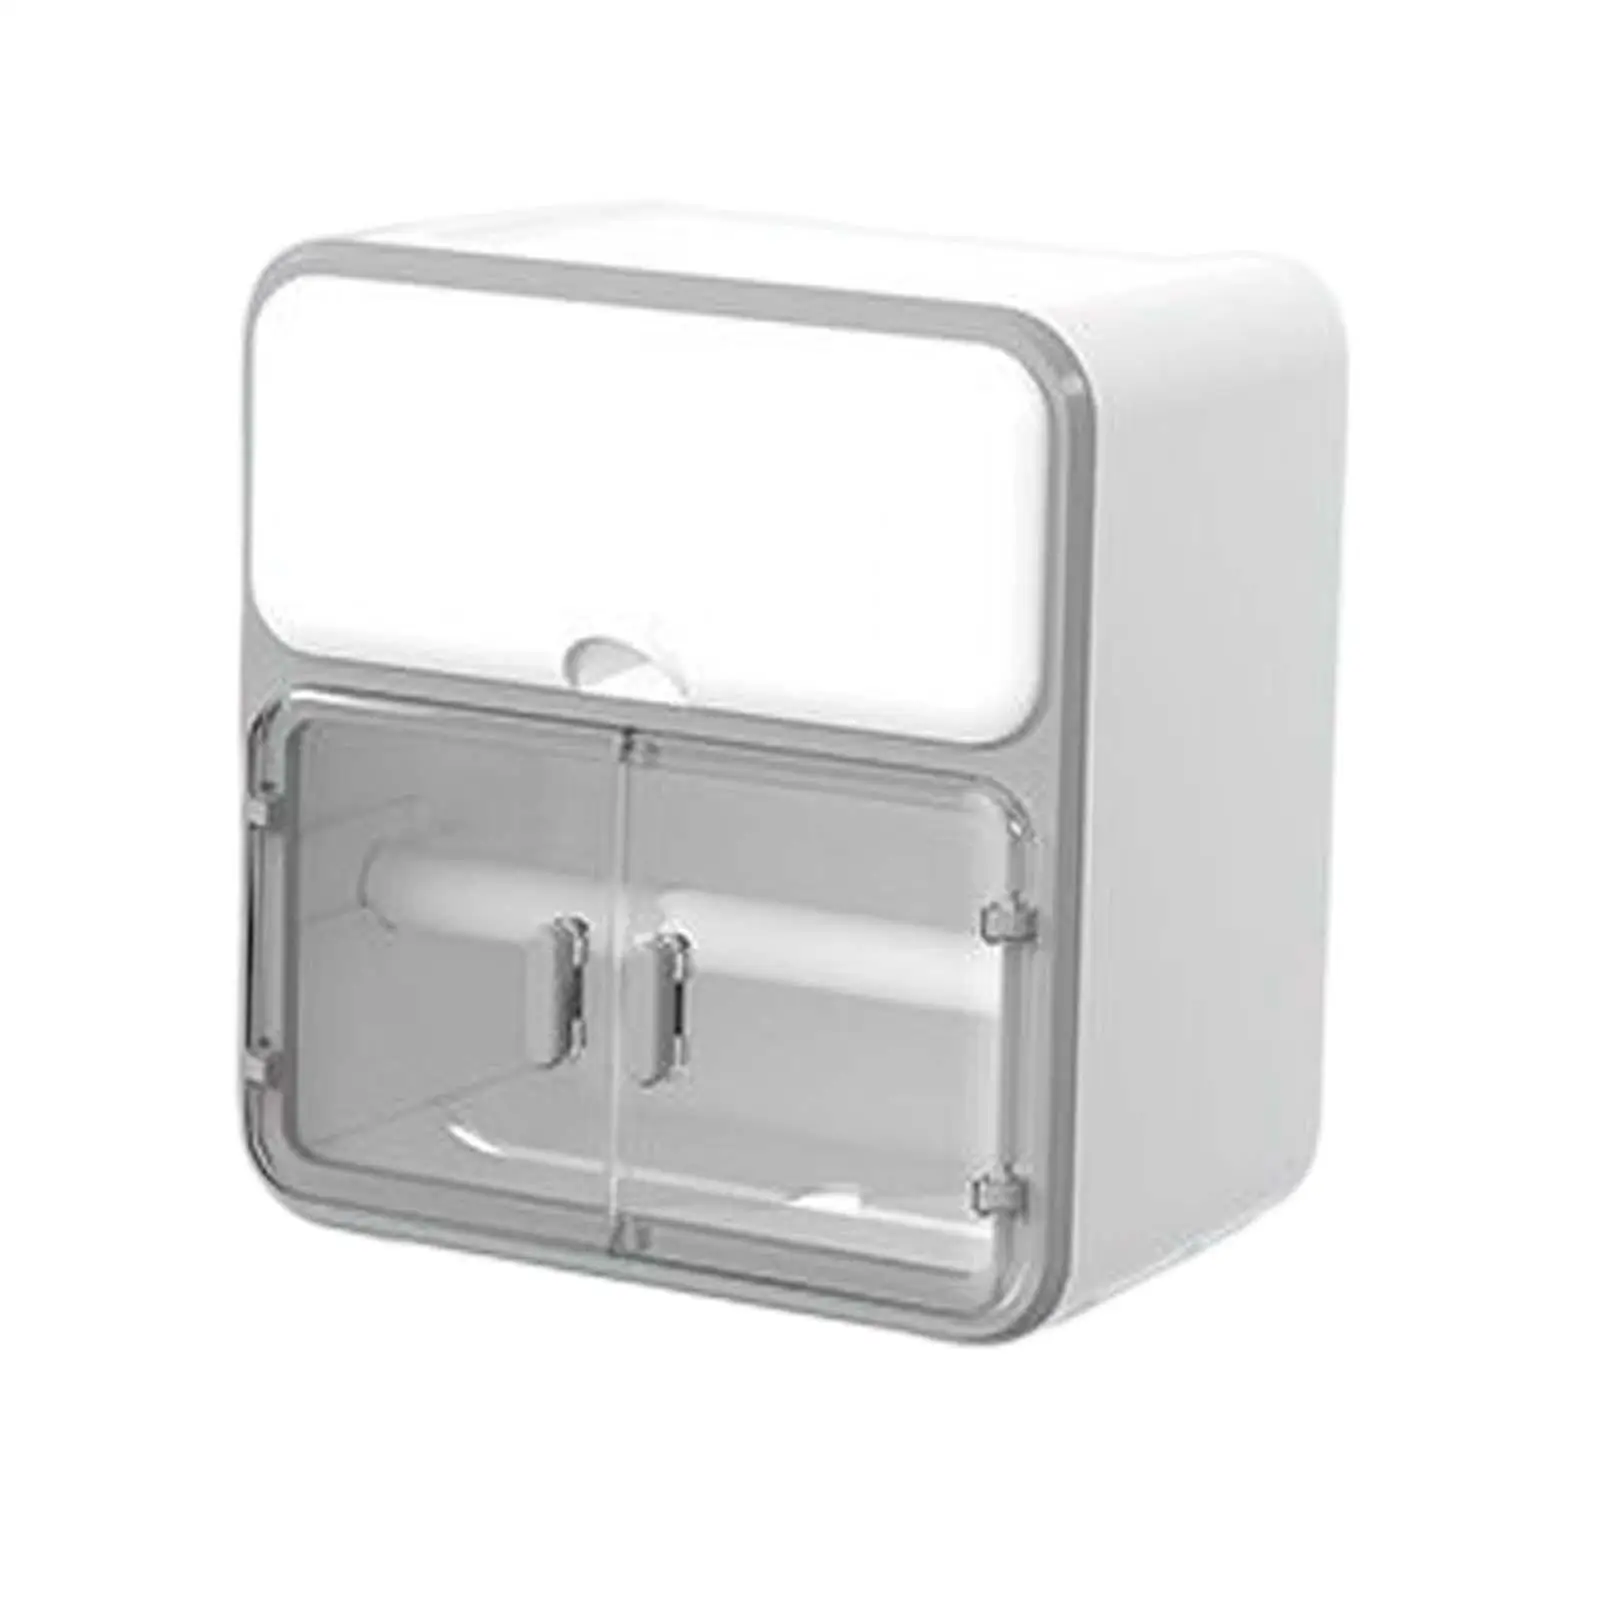 Toilet Paper Holder Tissue Paper Dispenser Bathroom Shelf Rack for Household